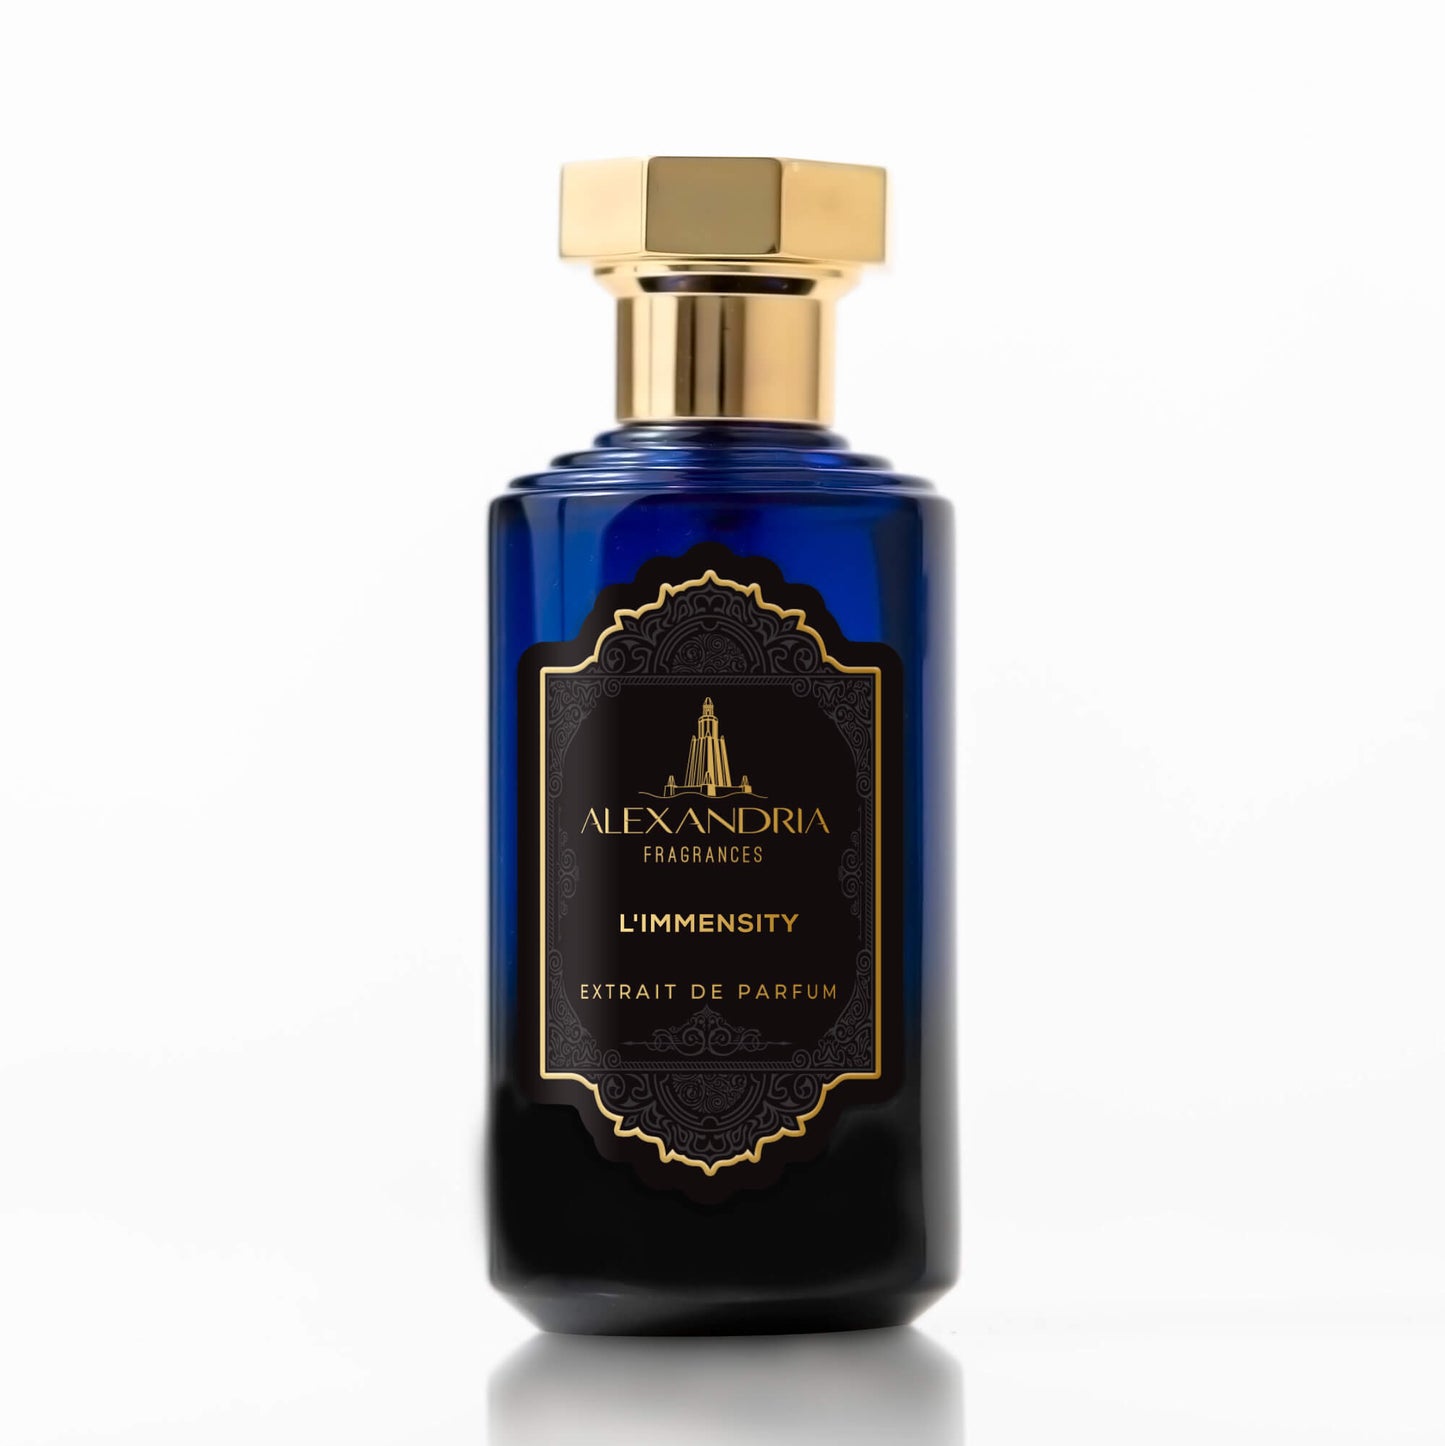 Louis Vuitton New Men's Fragrance Oils